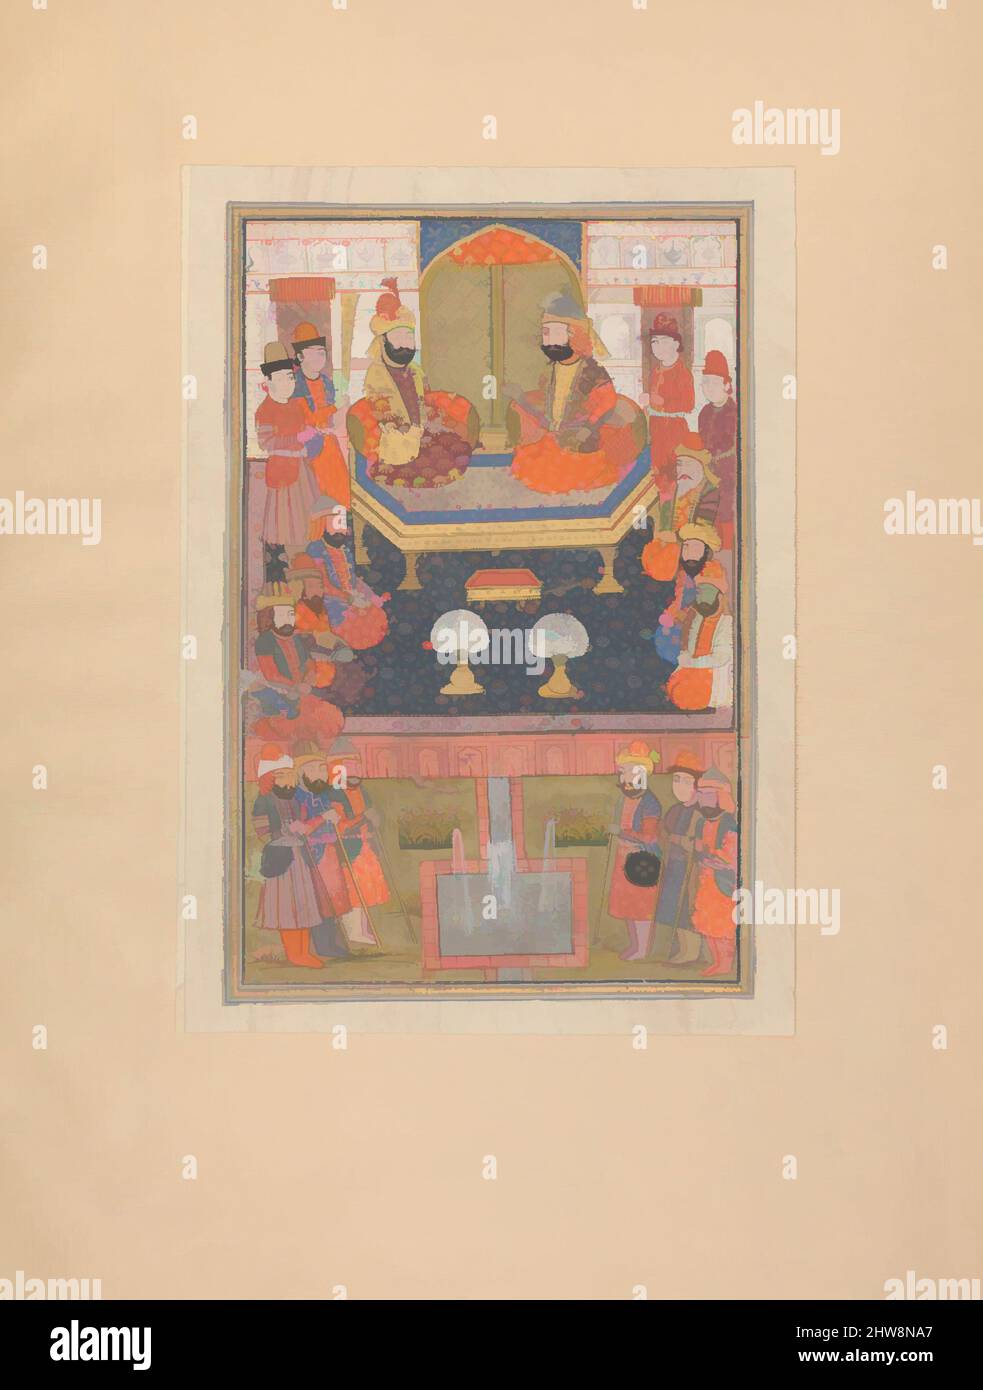 Arte ispirata da scena non identificata da uno Shahnama (Libro dei Re), fine 19th-inizio 20th secolo, attribuita a India, Kashmir, inchiostro, acquerello opaco, Argento, e oro su carta, in generale. 12 5/8 x 8 1/2in. (32,1 x 21,6cm), Codices, opere classiche modernizzate da Artotop con un tuffo di modernità. Forme, colore e valore, impatto visivo accattivante sulle emozioni artistiche attraverso la libertà delle opere d'arte in modo contemporaneo. Un messaggio senza tempo che persegue una nuova direzione selvaggiamente creativa. Artisti che si rivolgono al supporto digitale e creano l'NFT Artotop Foto Stock